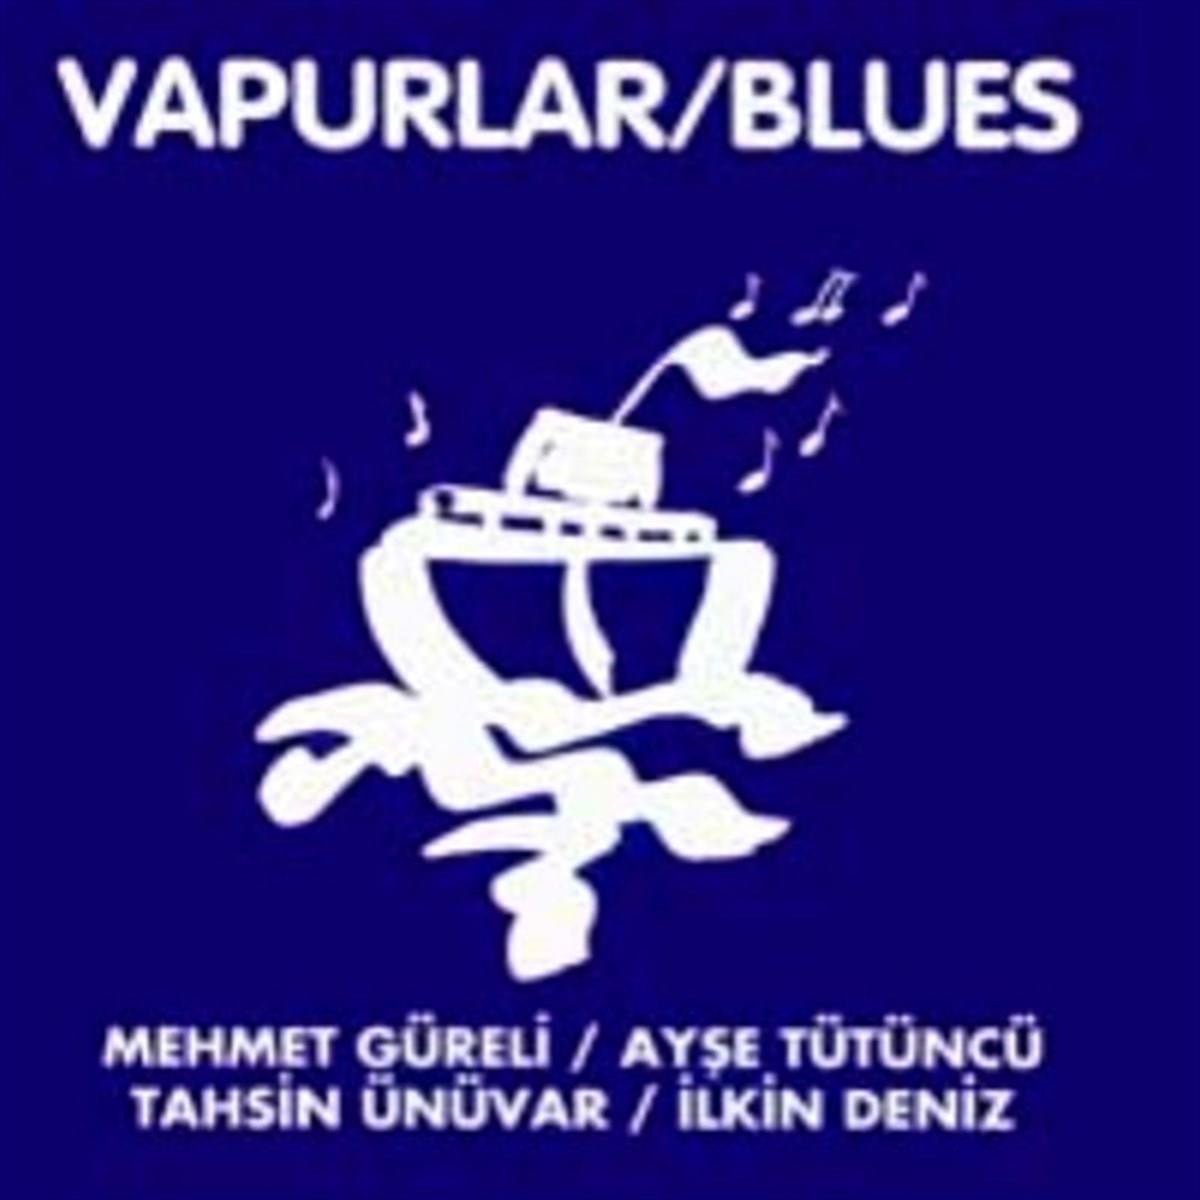 Mehmet Güreli - Vapurlar / Blues (CD)